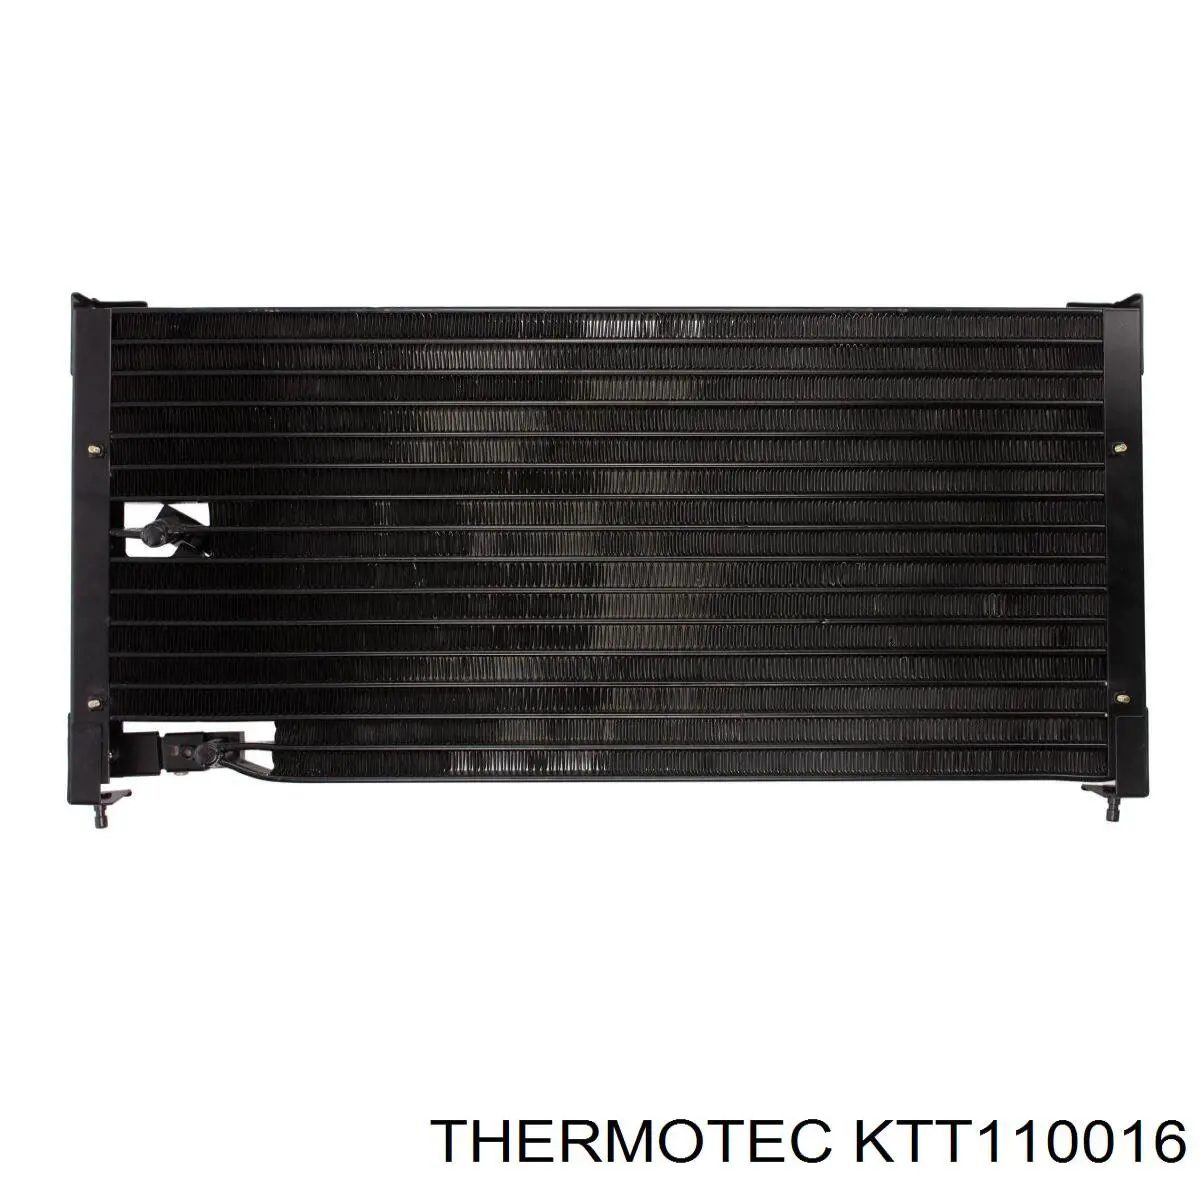 KTT110016 Thermotec condensador aire acondicionado